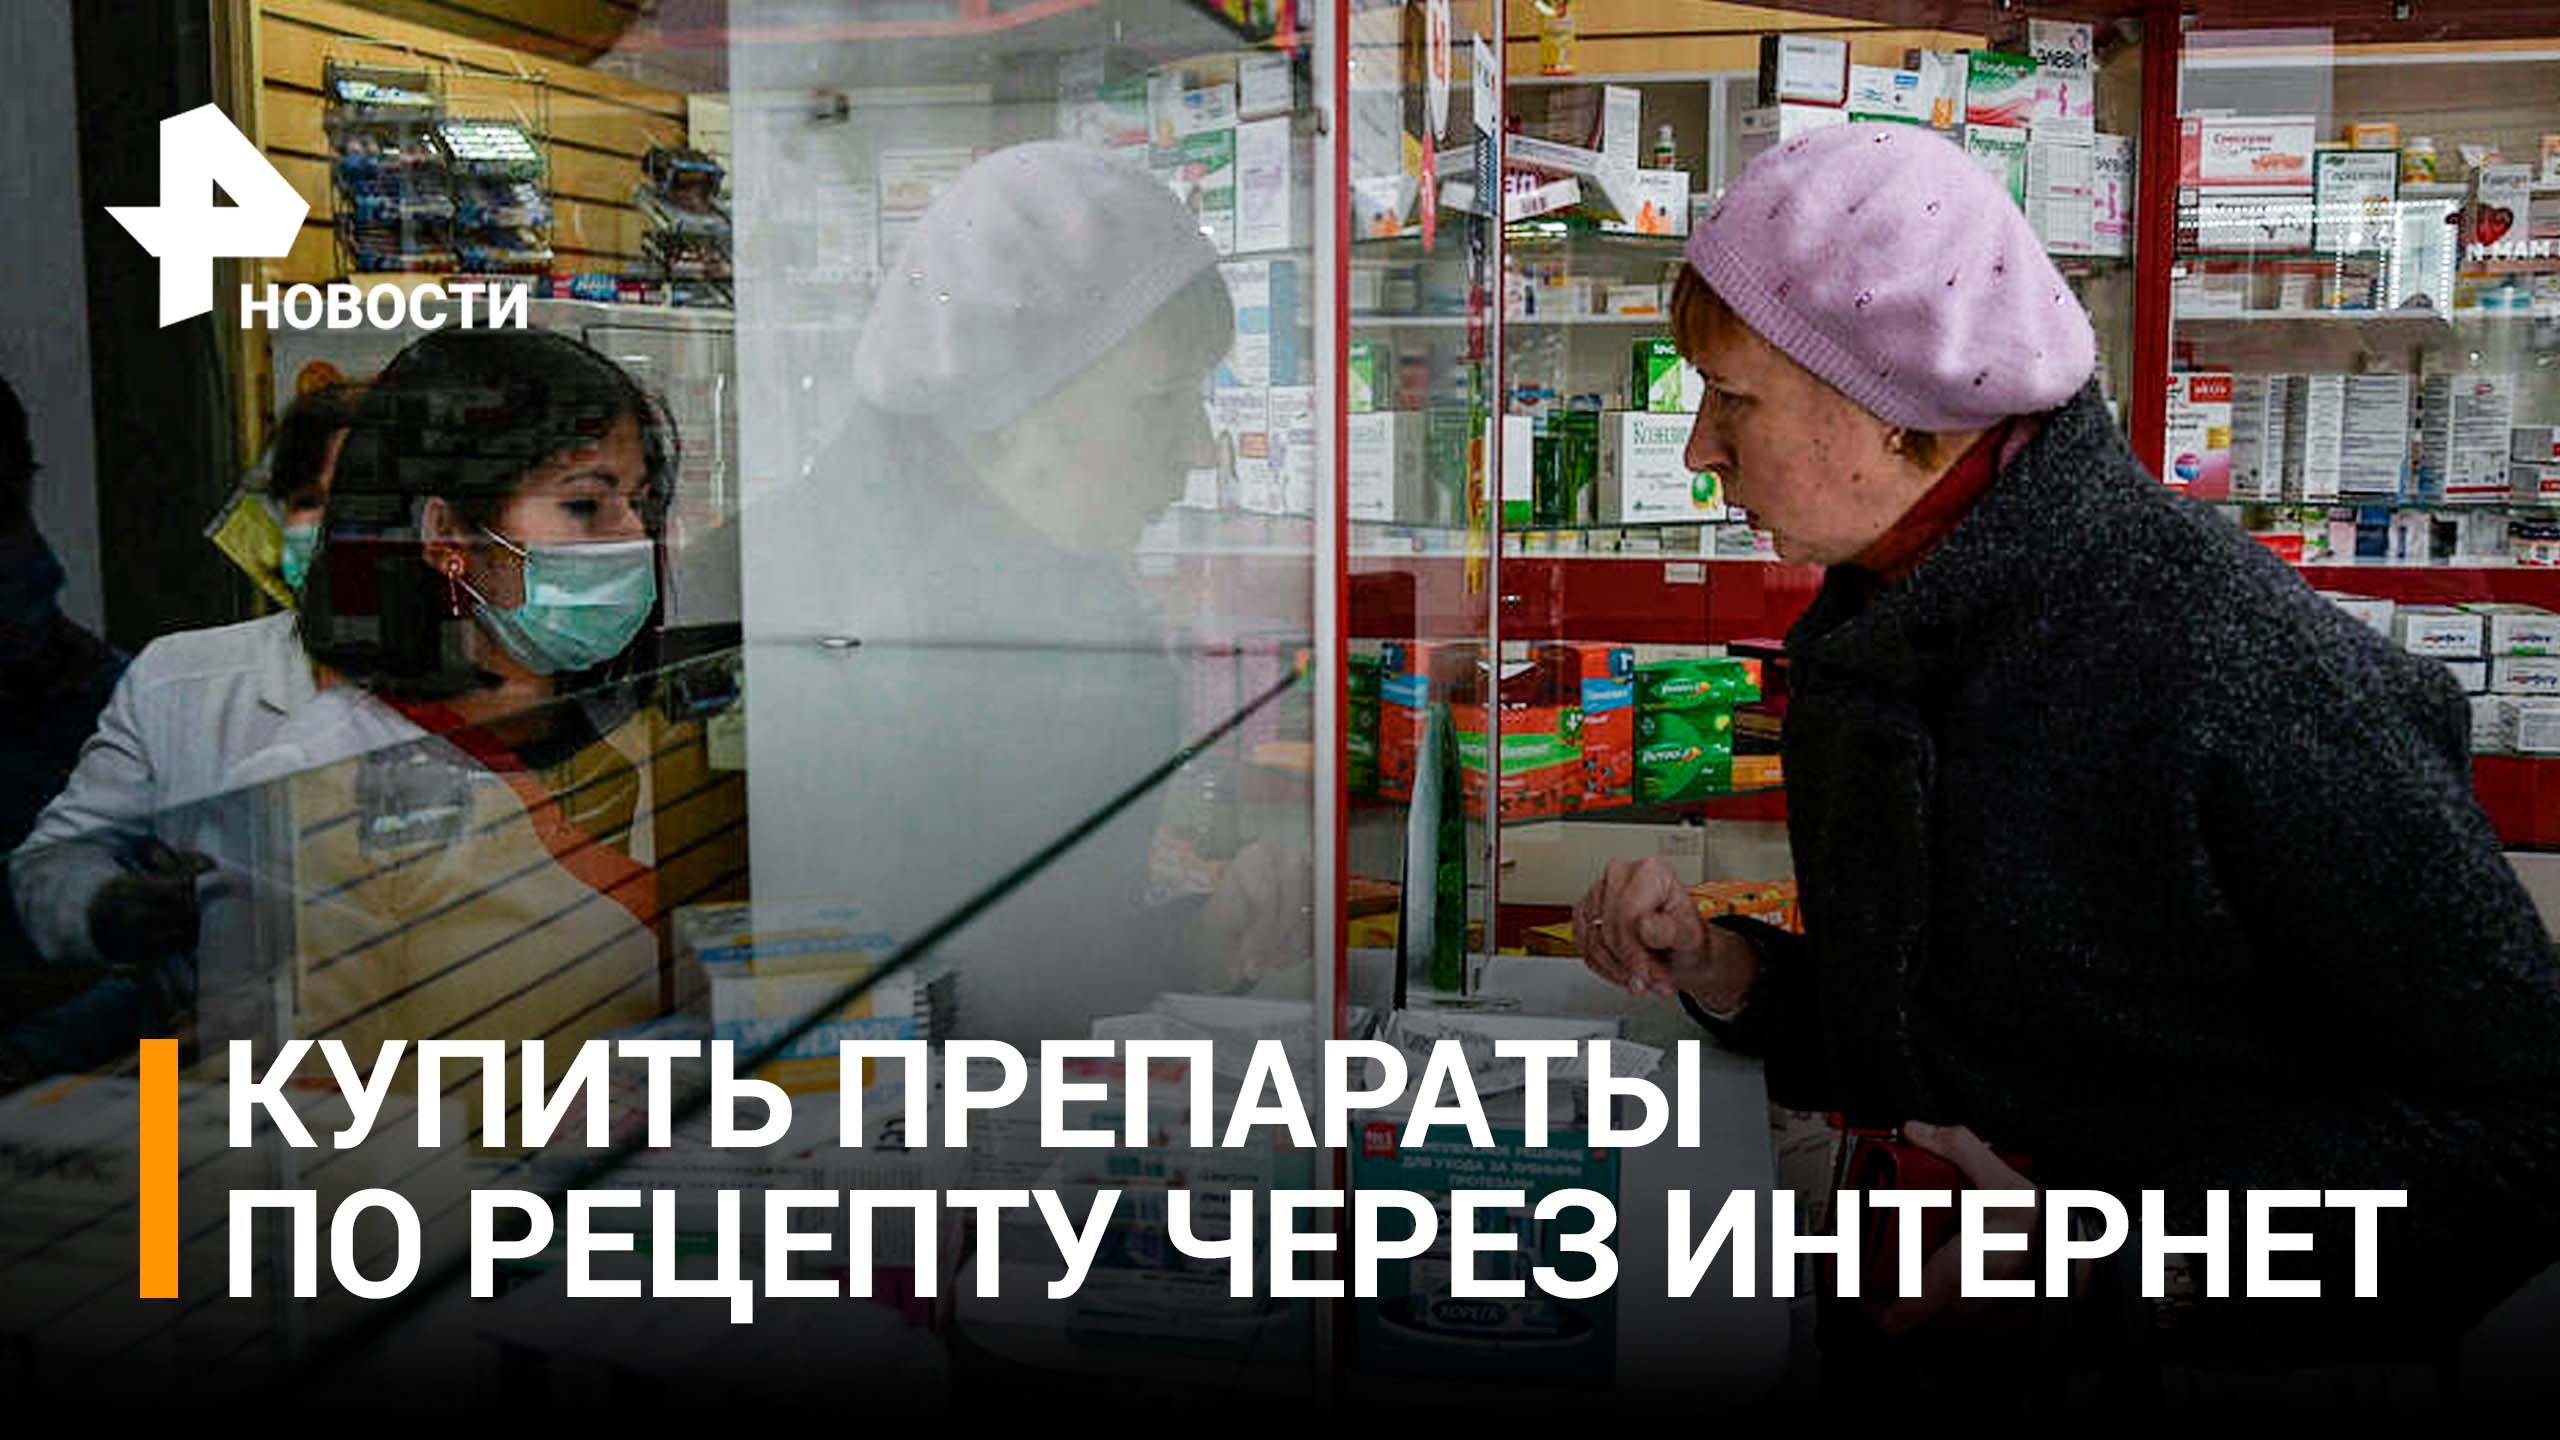 Как онлайн-аптеки будут продавать рецептурные лекарства / РЕН Новости